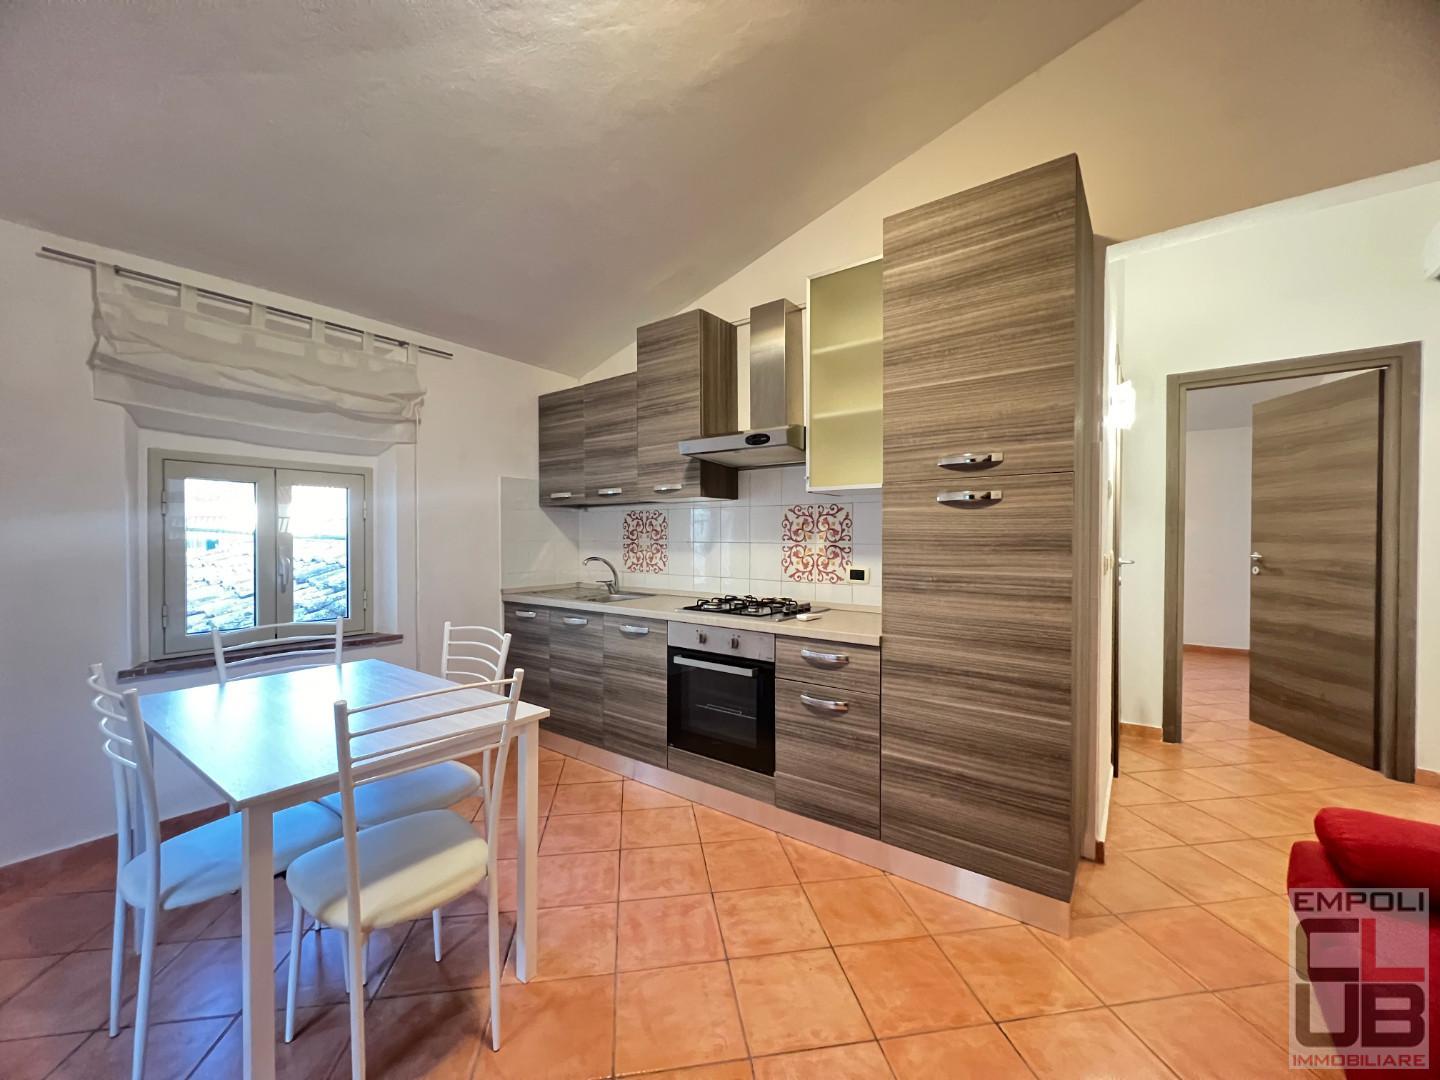 Apartment for rent in Castelfiorentino (FI)